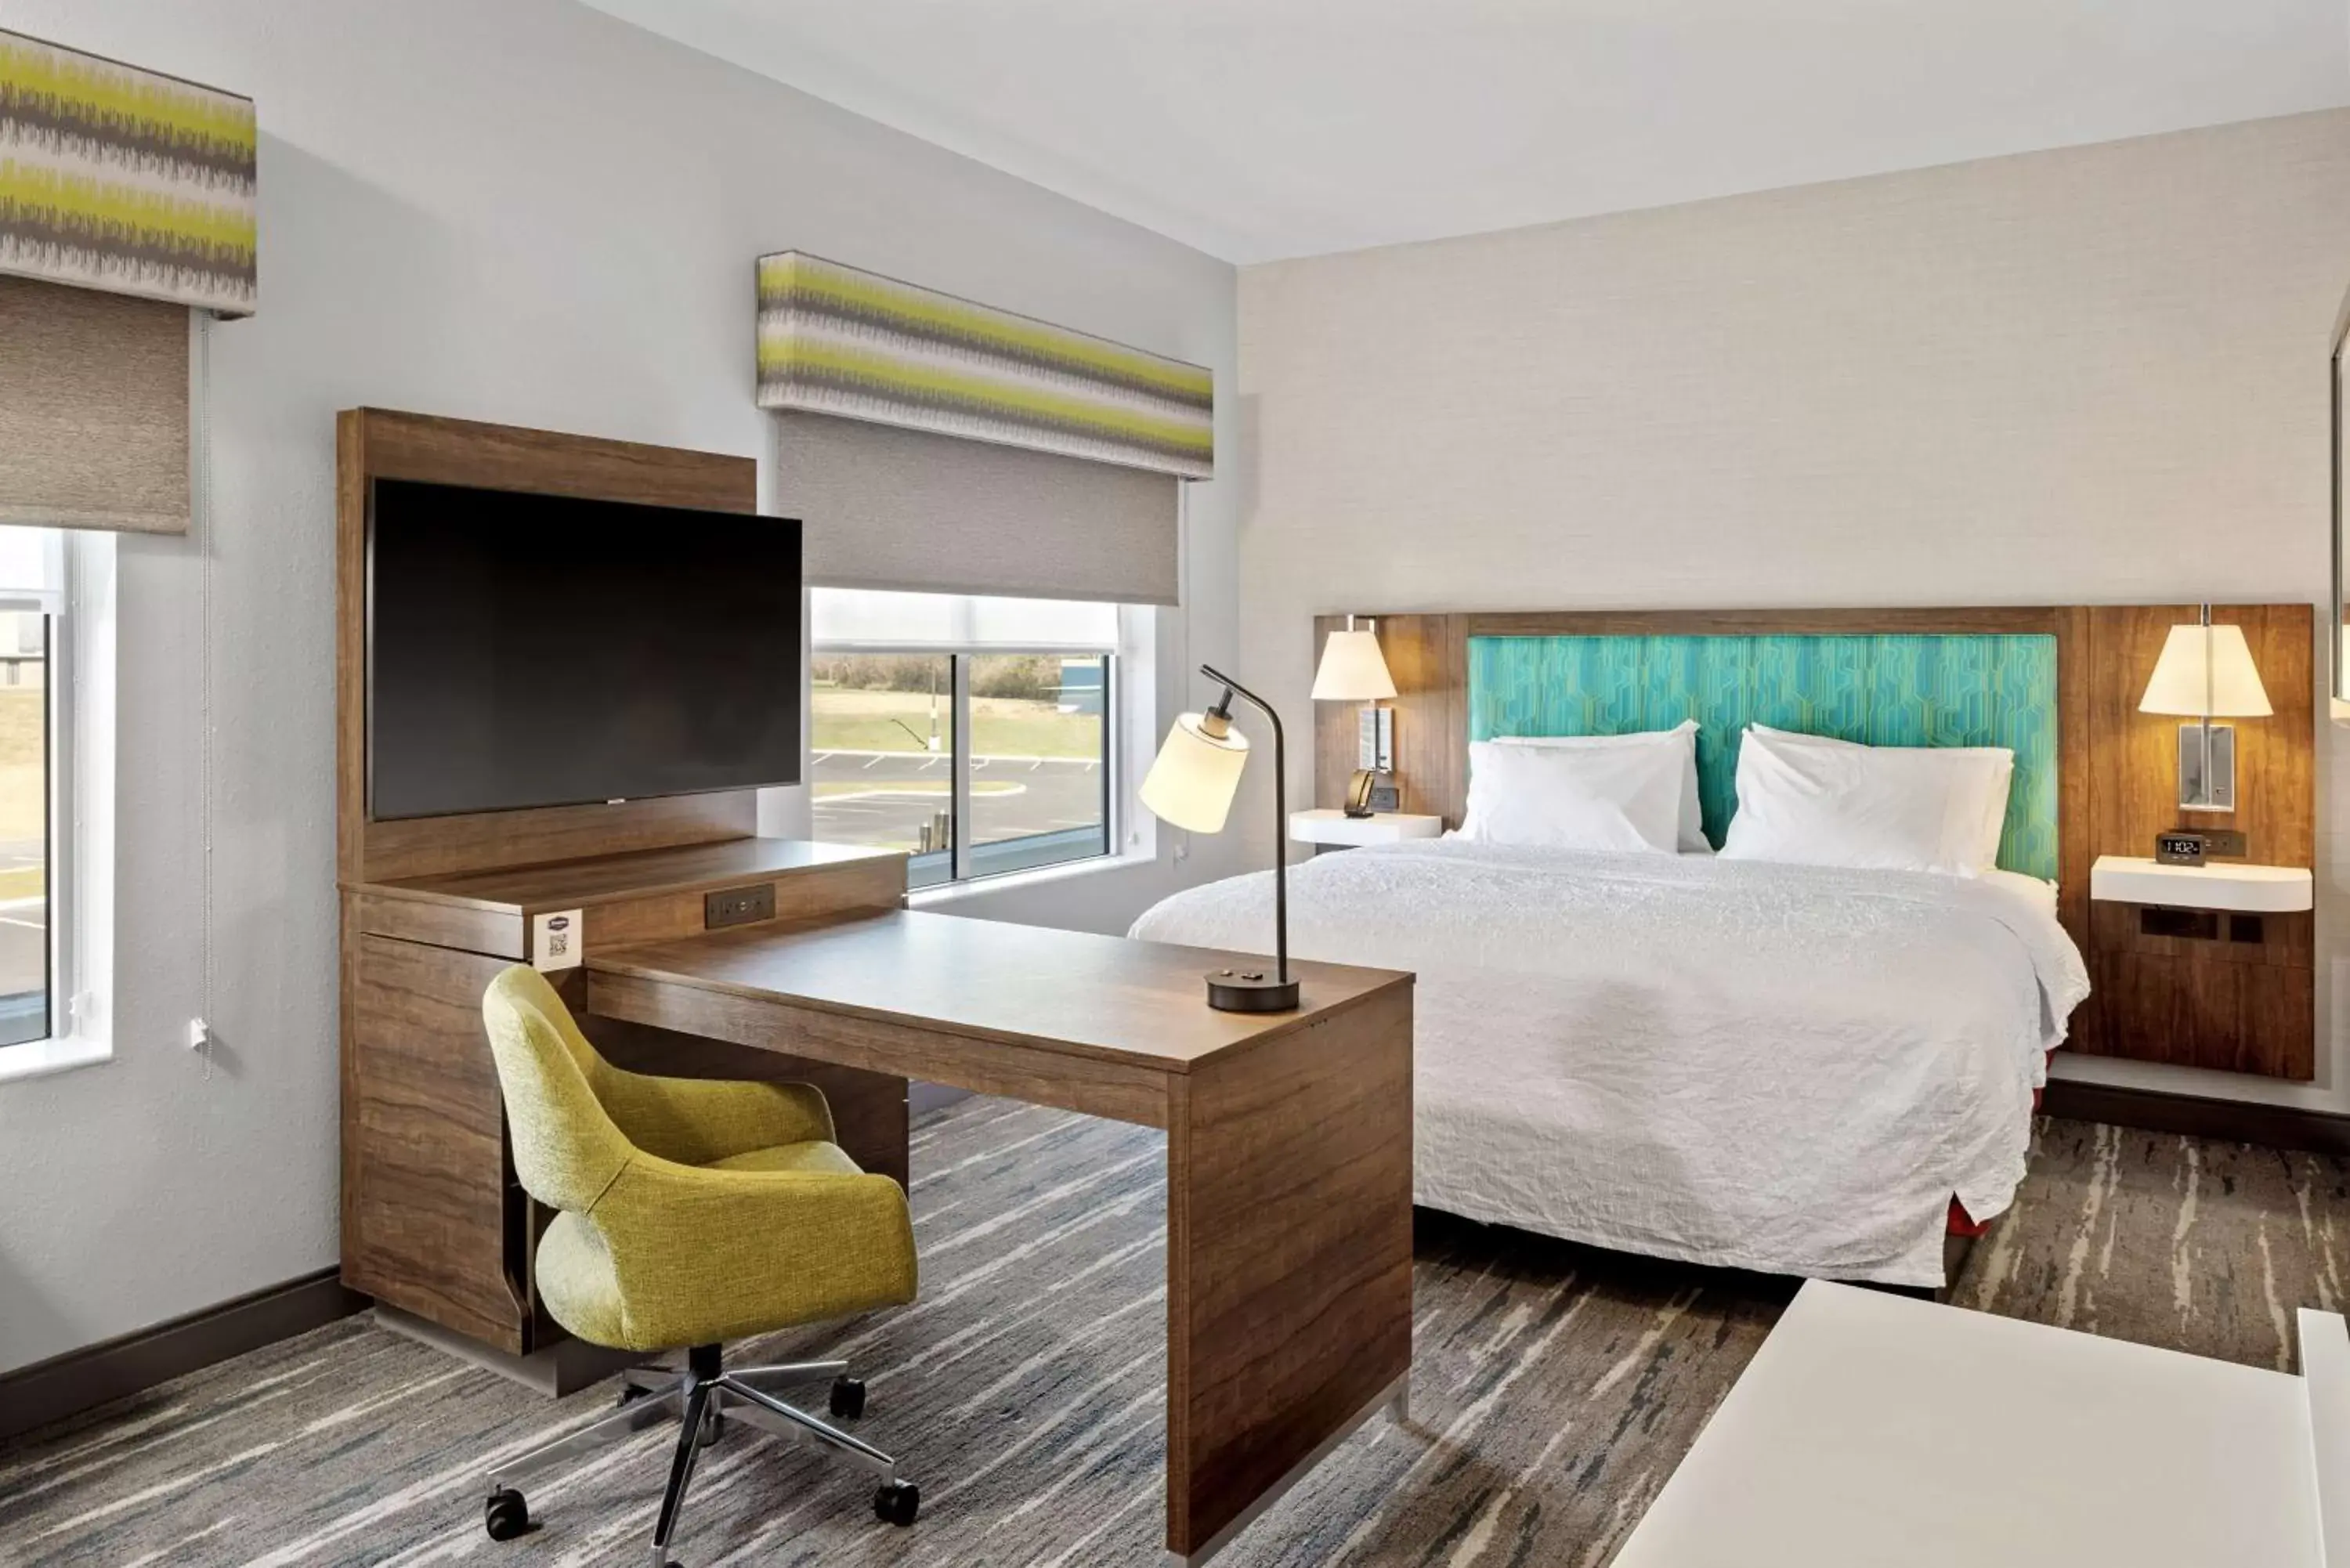 Bedroom in Hampton Inn & Suites Cincinnati West, Oh